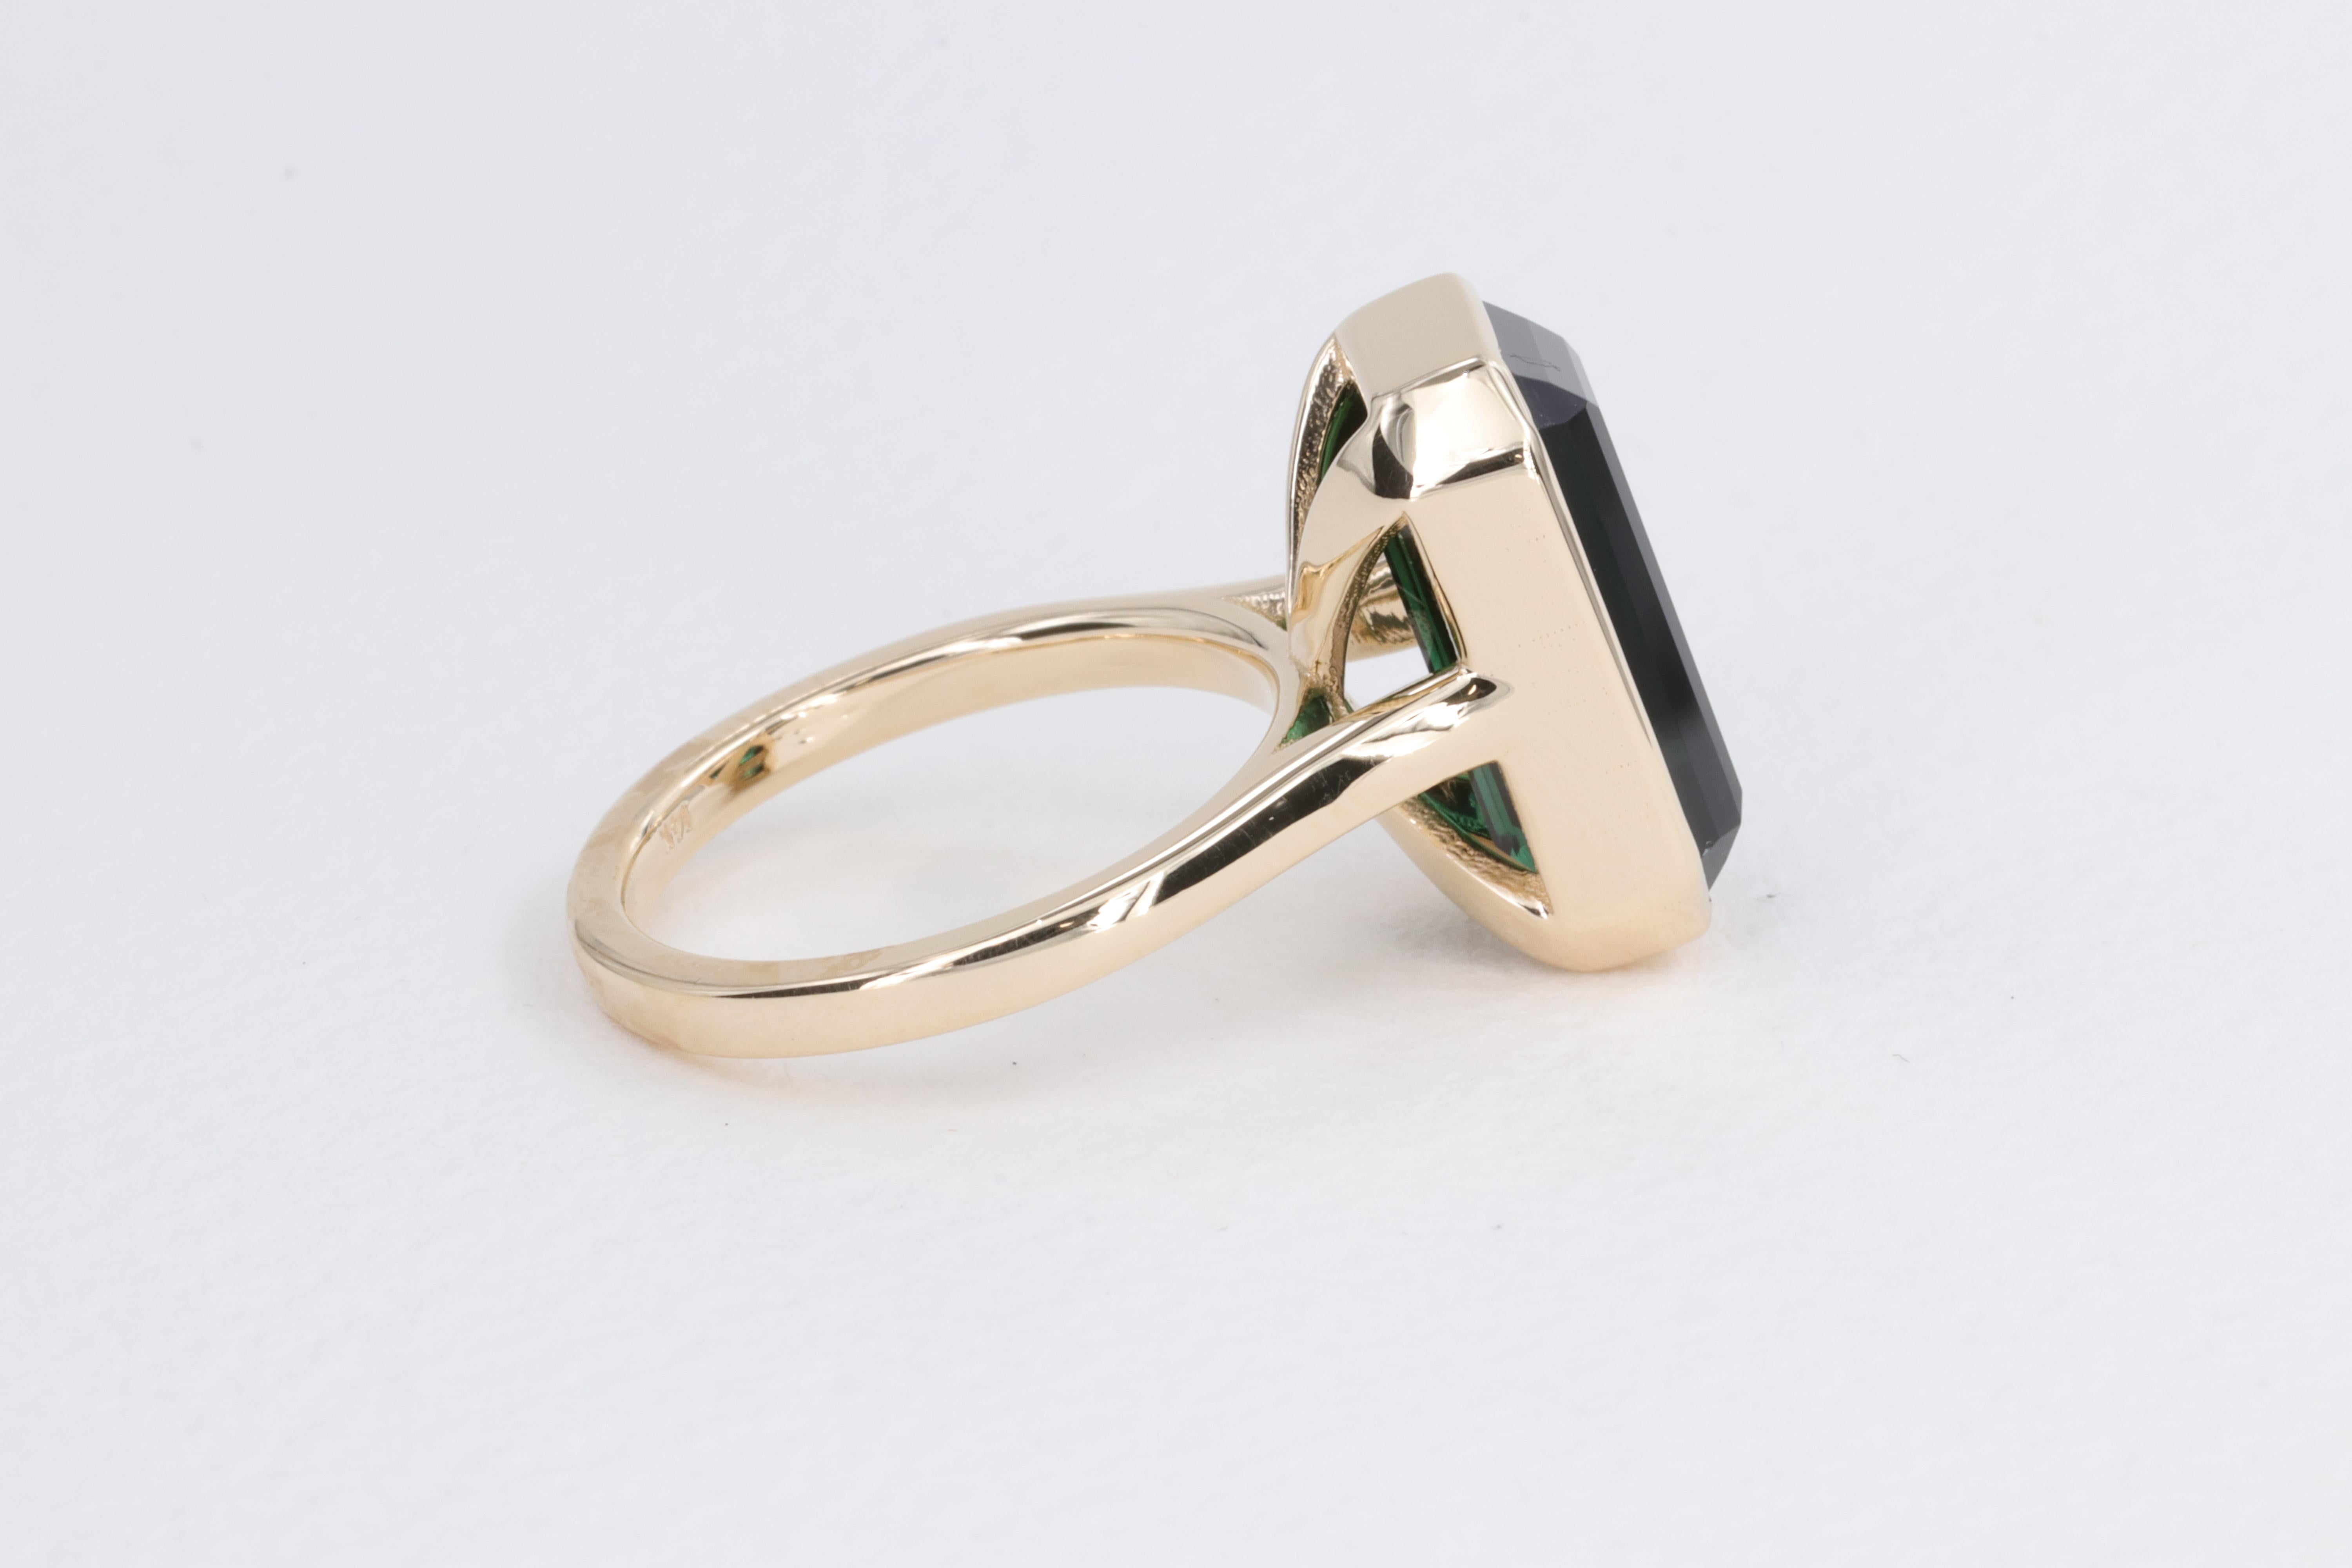 6.78 Carat Green Tourmaline Emerald Cut Bezel Set Yellow Gold Ring For Sale 2